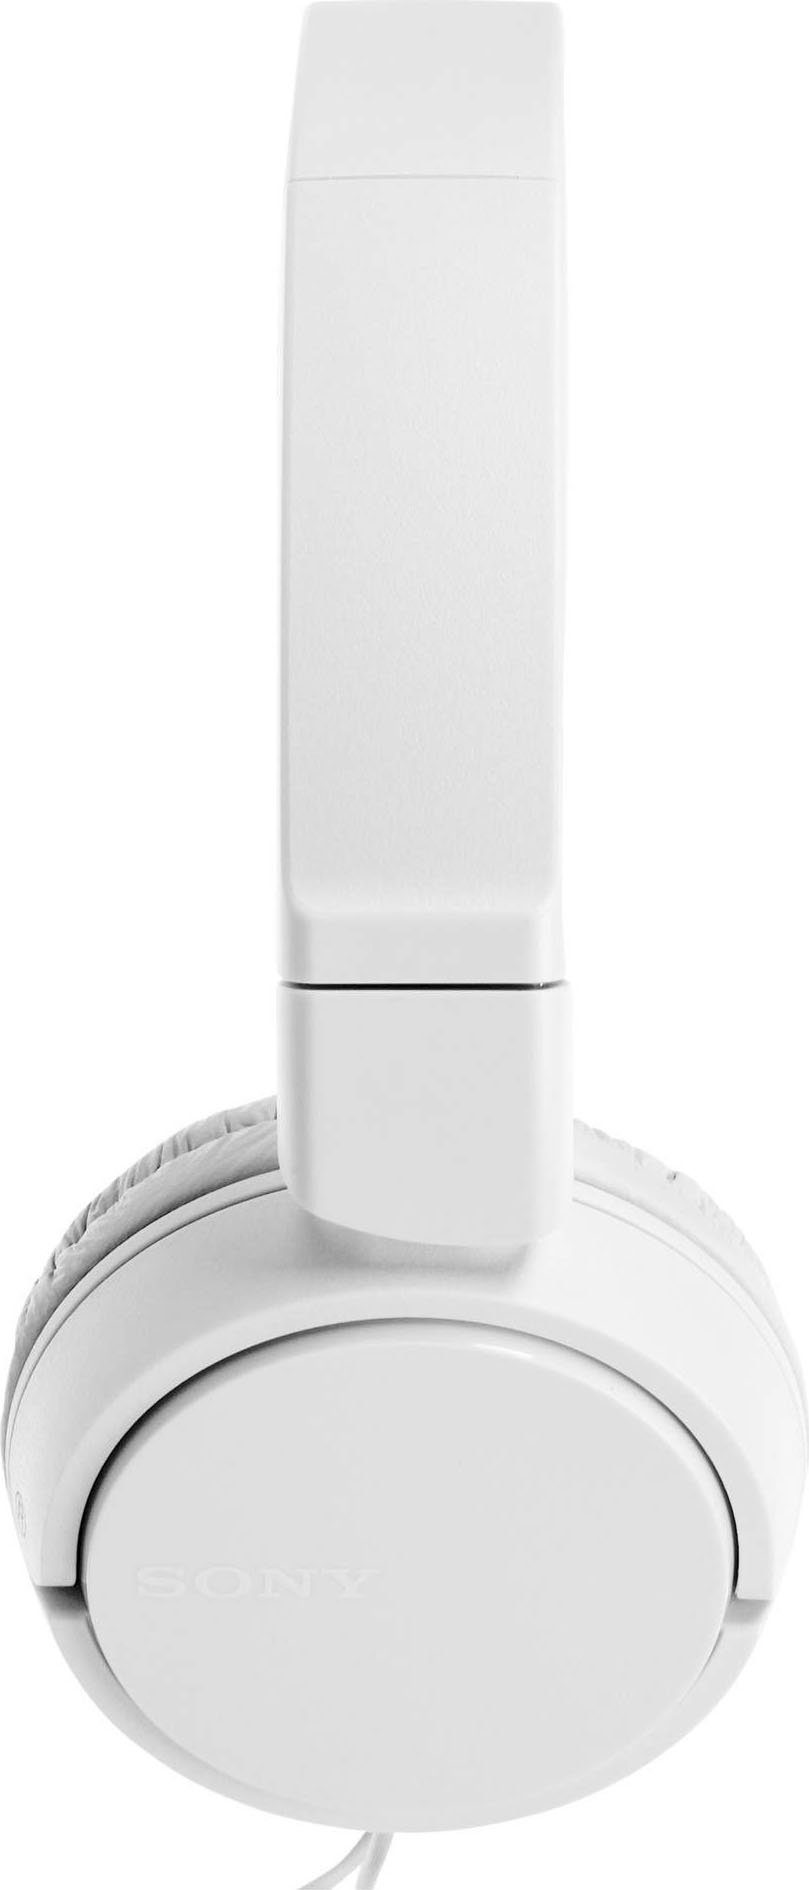 weiß Musik, On-Ear-Kopfhörer Headsetfunktion) und Sony Anrufe MDR-ZX110AP Steuerung (Freisprechfunktion, für integrierte mit Faltbarer